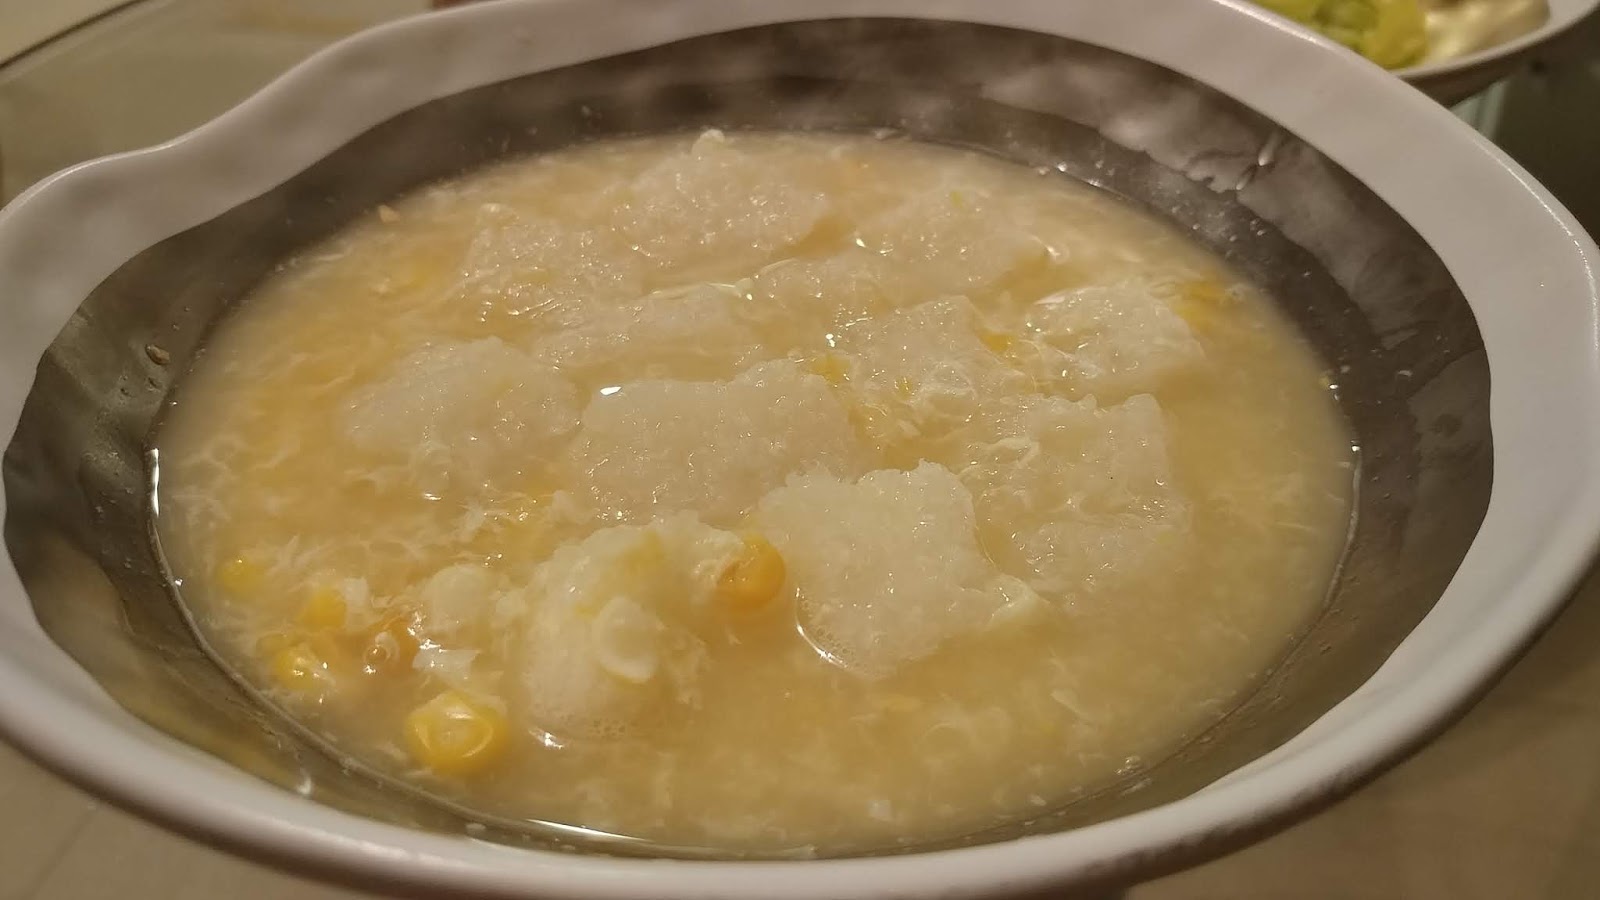 瑤柱雪耳雞蓉粟米羹食譜、做法 | YeungMa的Cook1Cook食譜分享